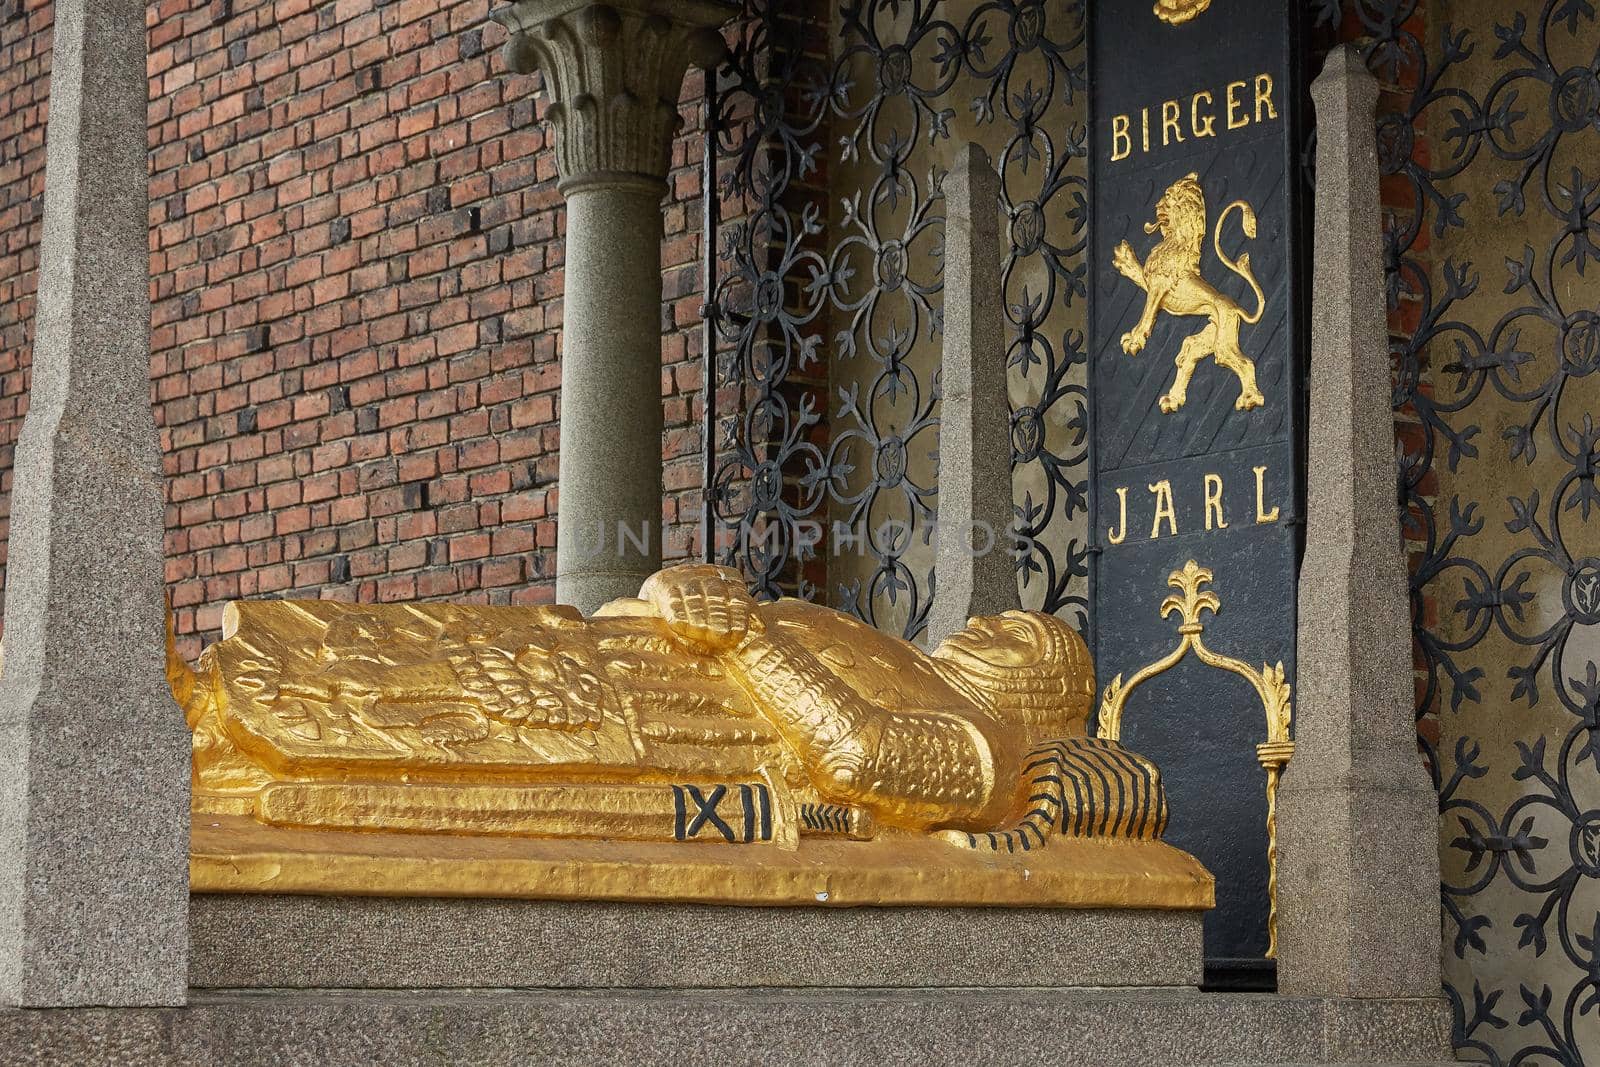 Tomb of Birger Jarl or Birger Magnusson, Jarl or Duke of Sweden, who founded Stockholm in the 13th century at Stadshuset, City Hall, in Kungsholmen island Stockholm, Sweden.